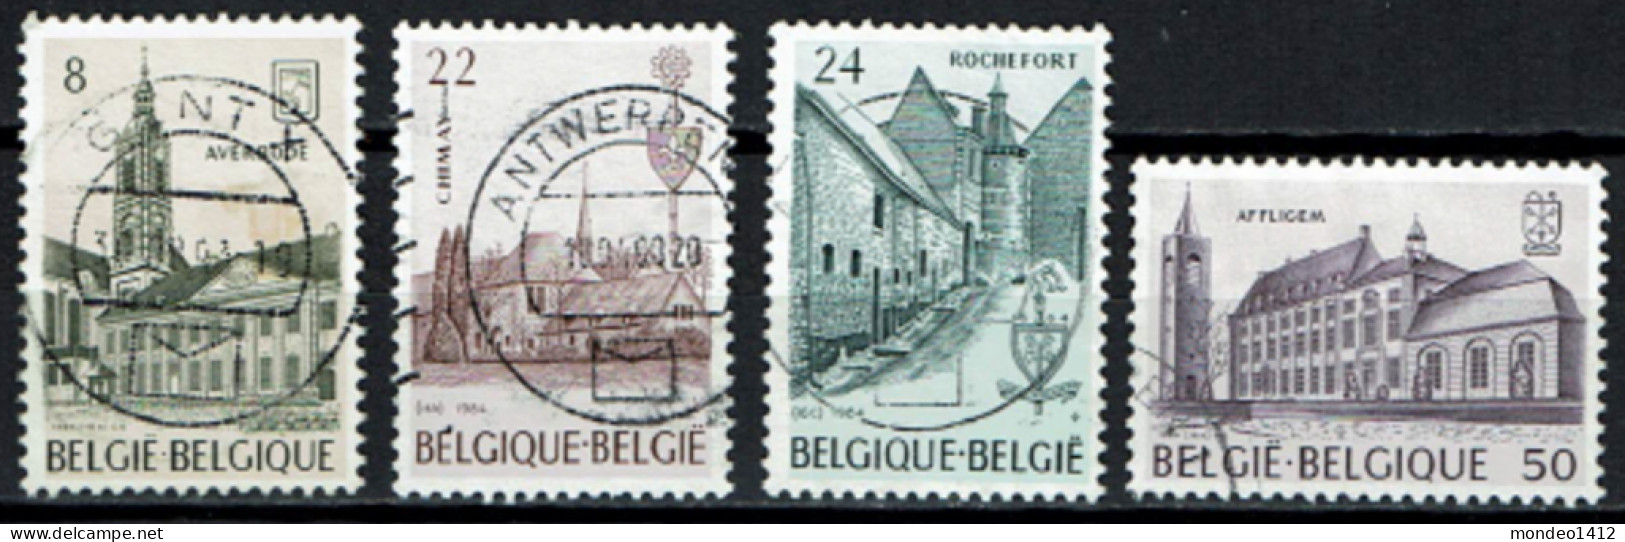 België 1984 OBP 2146/2149 - Y&T 2146/49 - Abdijen, Abbayes, Abbeys - Averbode, Chimay, Rochefort, Affligem - Used Stamps